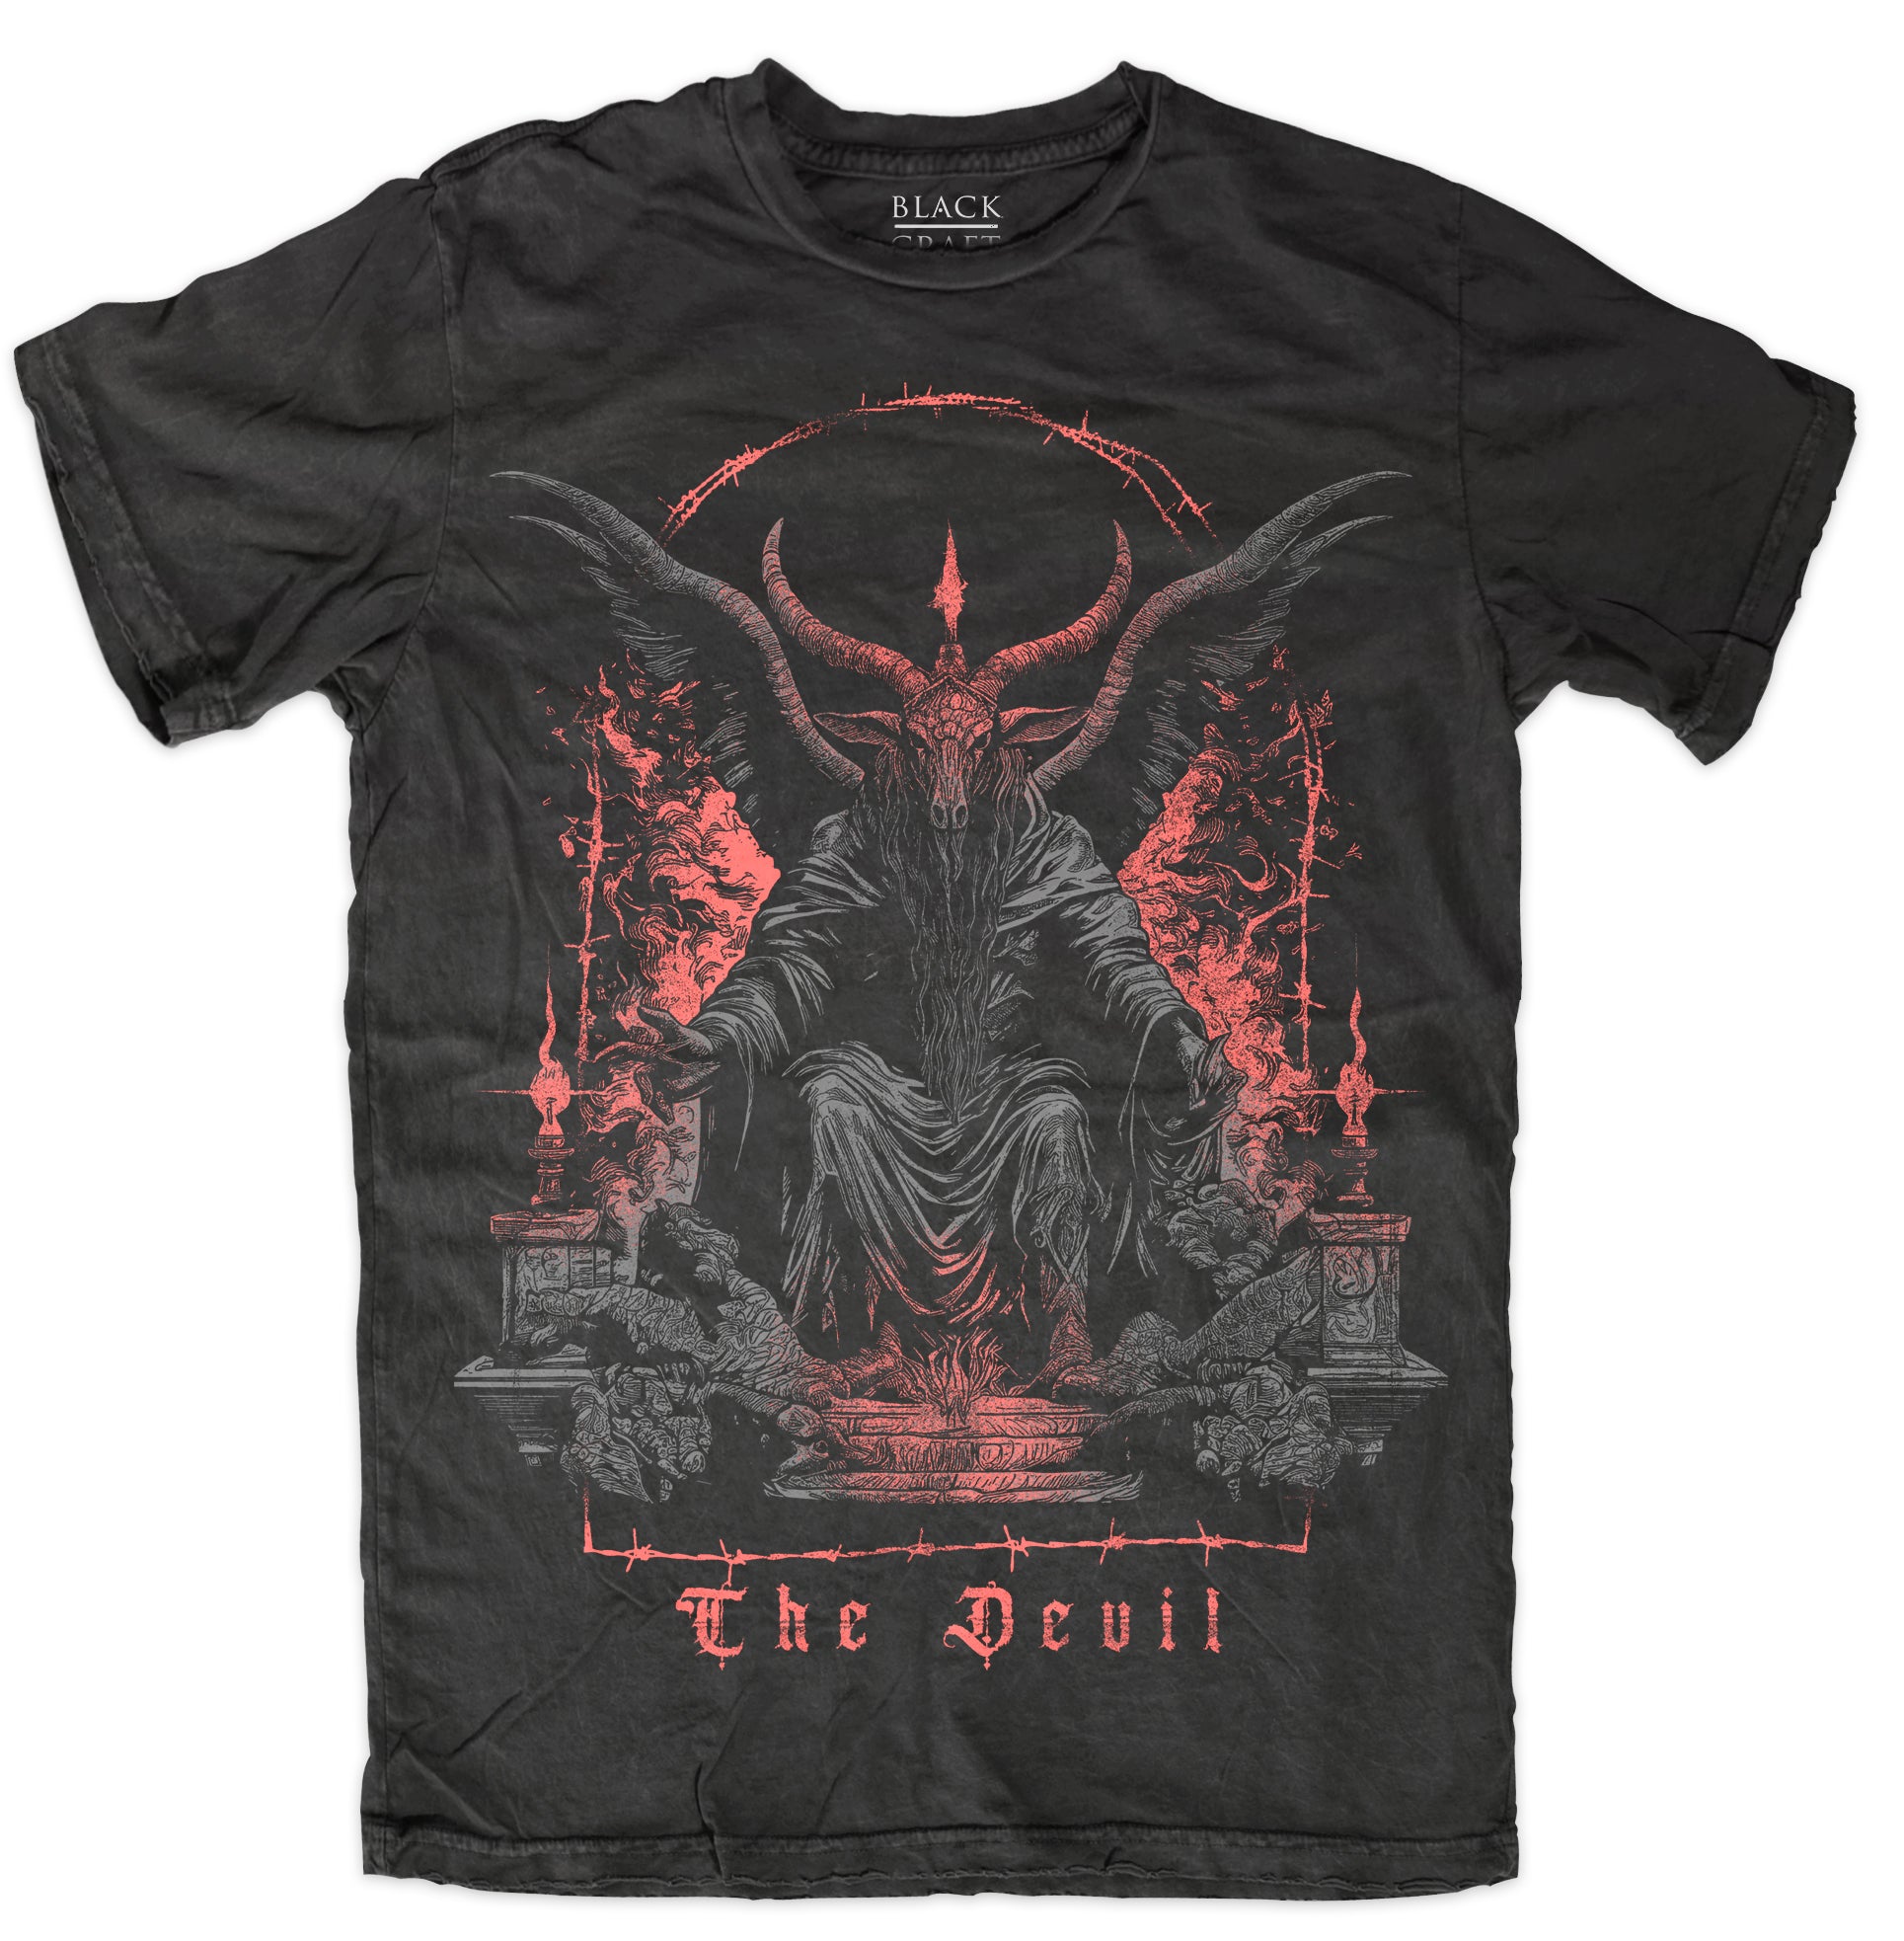 The Devil – Blackcraft Cult